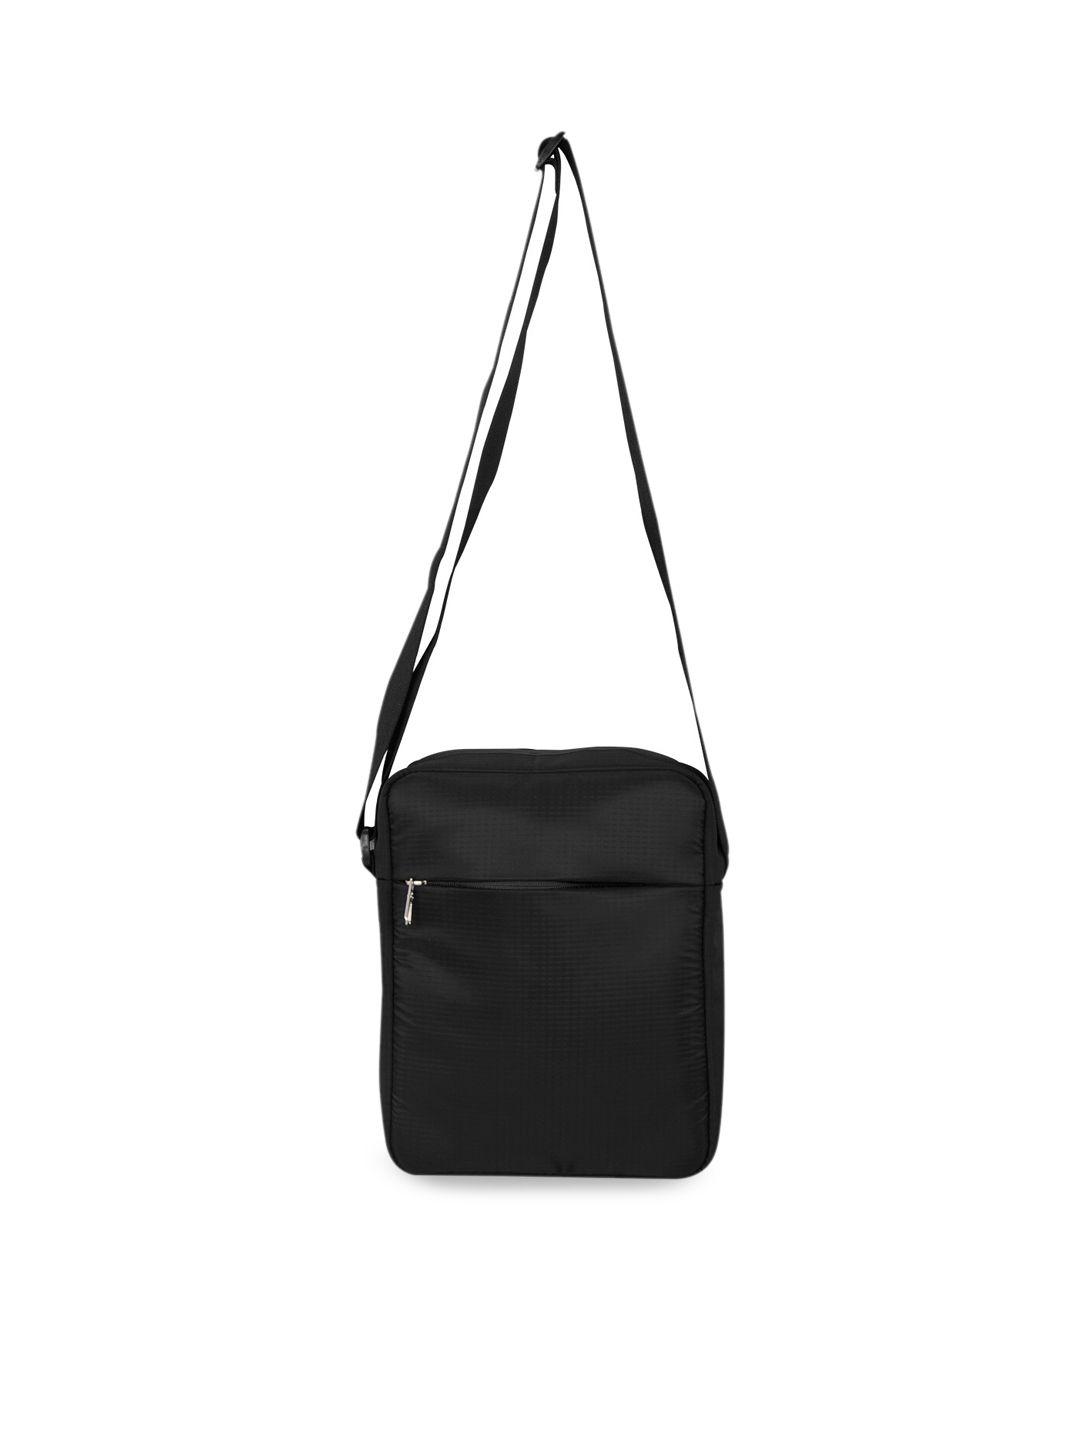 cosmus black structured shoulder bag